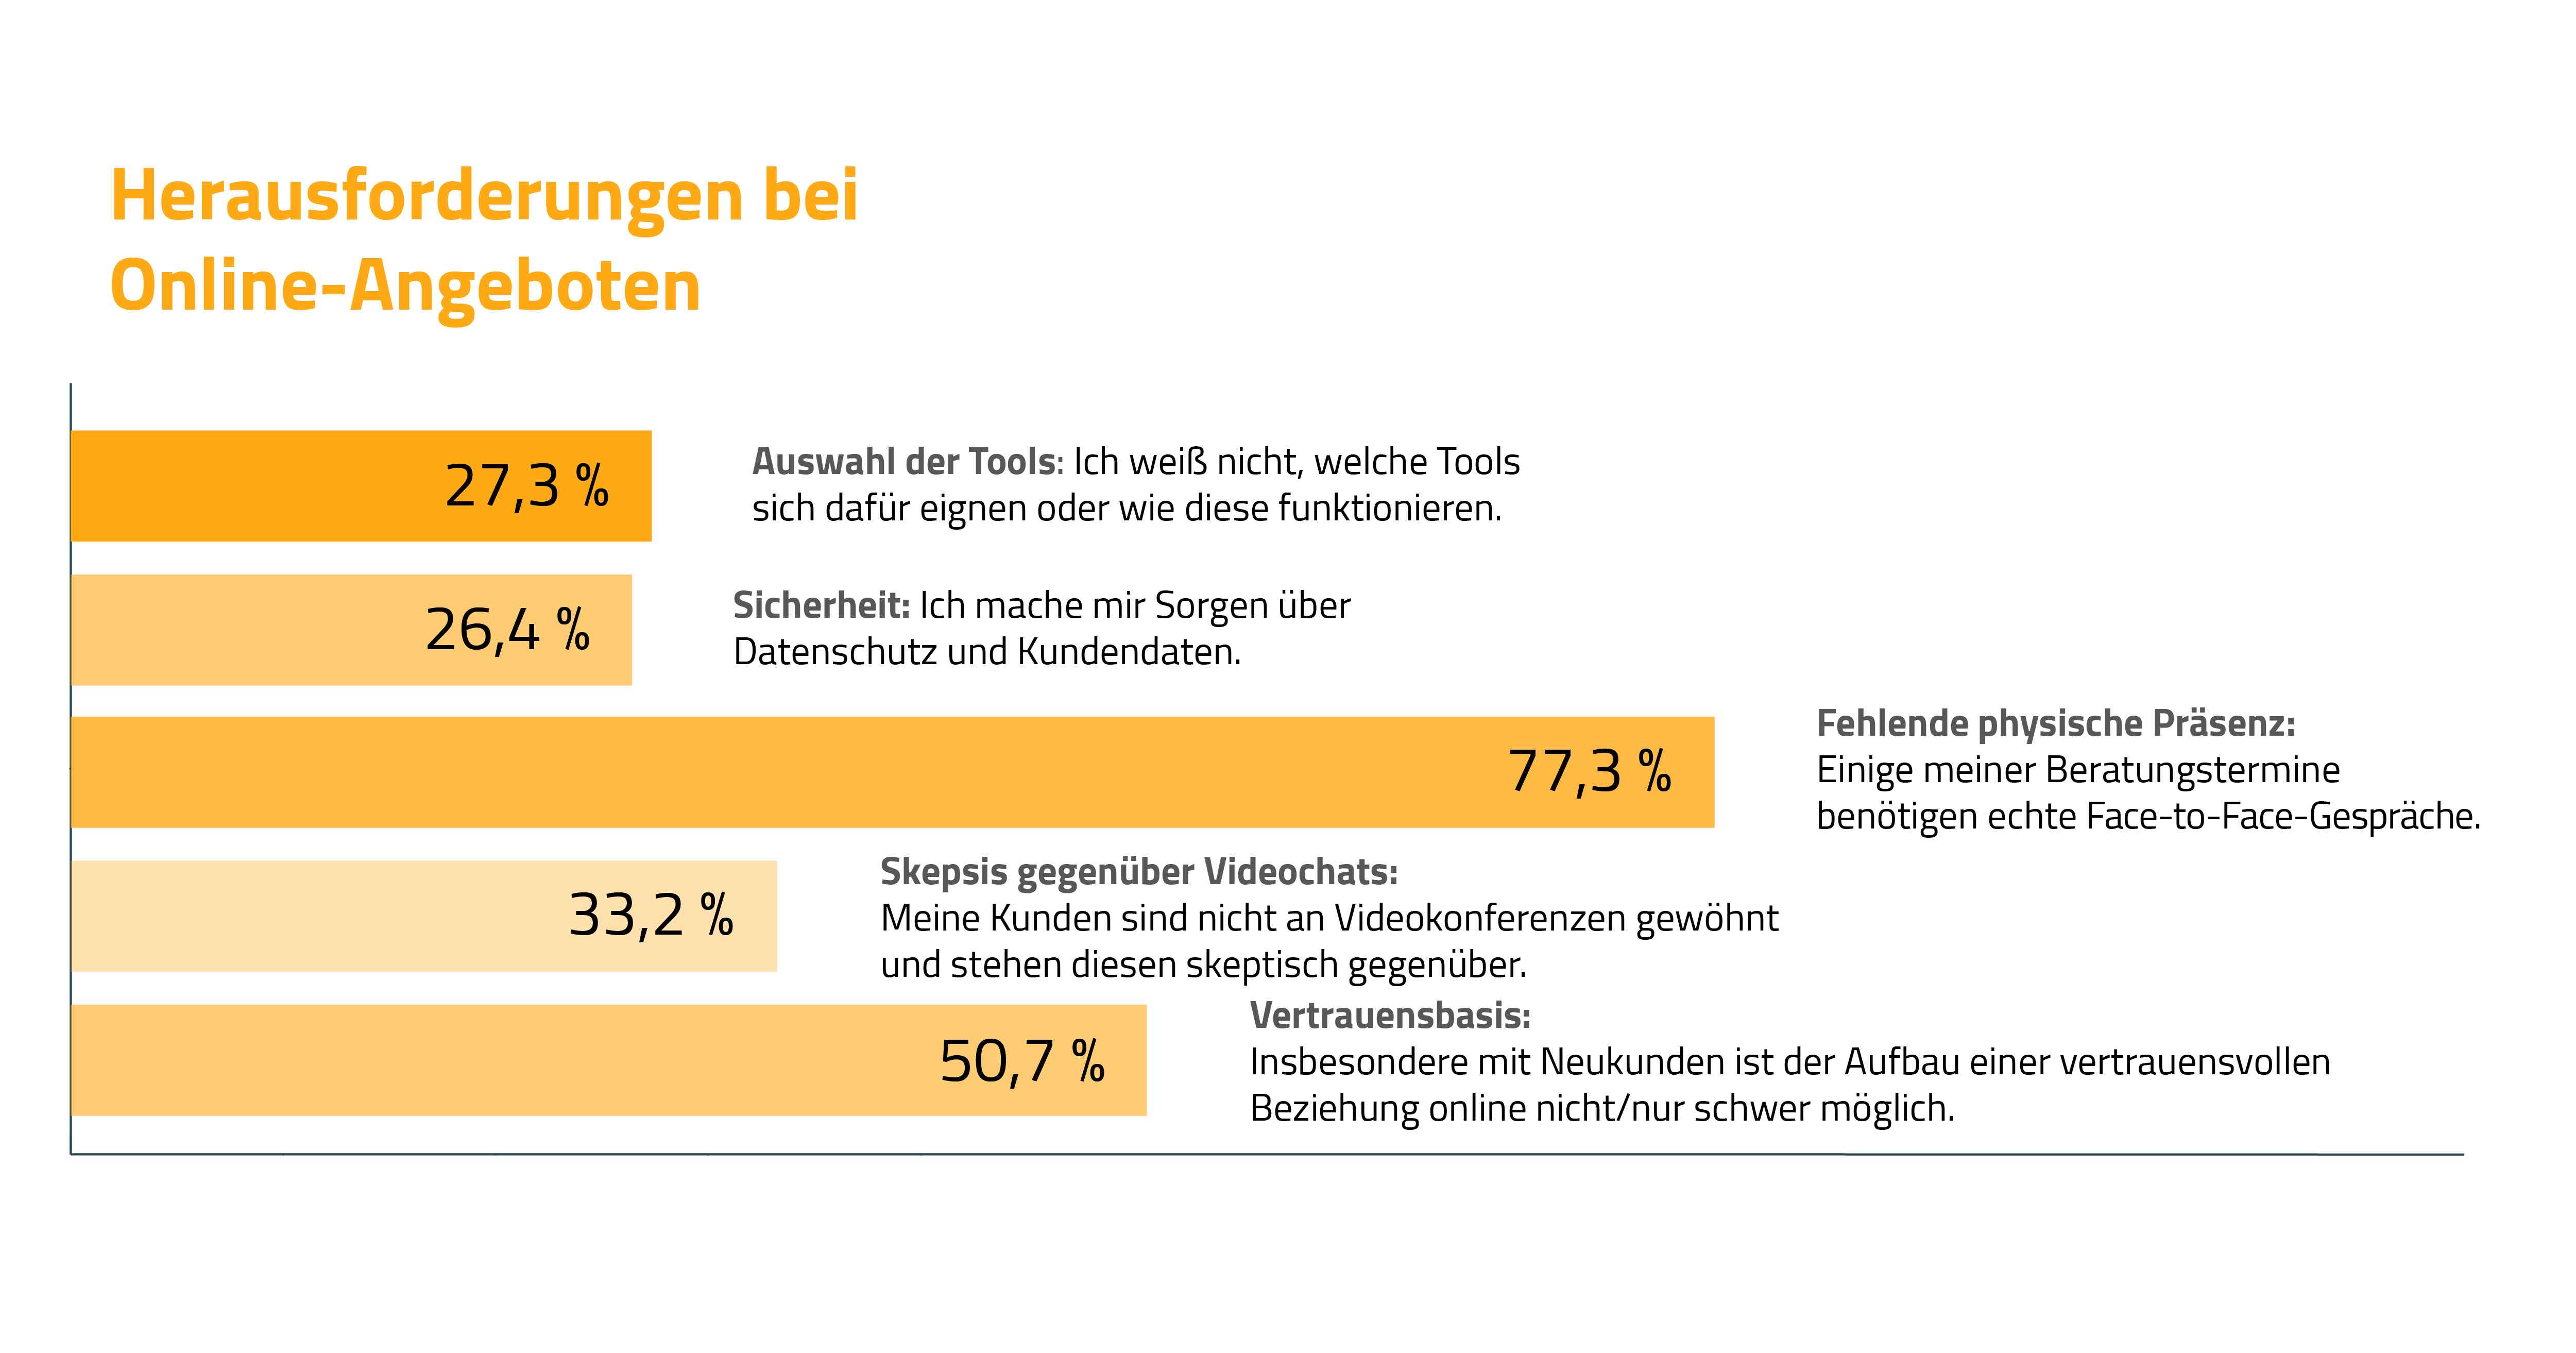 Herausforderungen bei der Digitalisierung von Beratungsdienstleistungen in der Weiterbildungsbranche (Quelle: Umfrage Seminarmarkt.de / April '20)